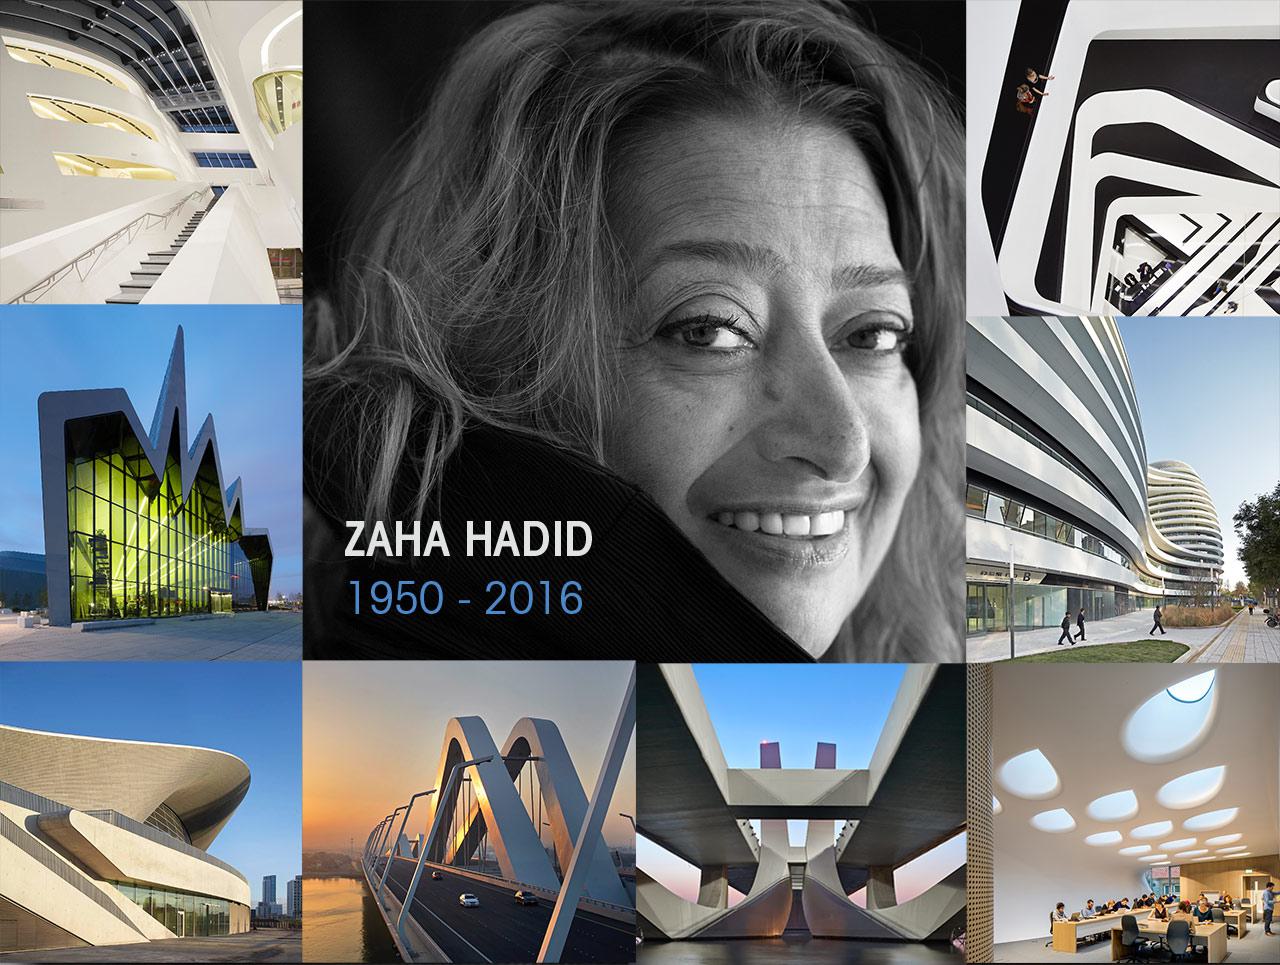 A Tribute to Zaha Hadid